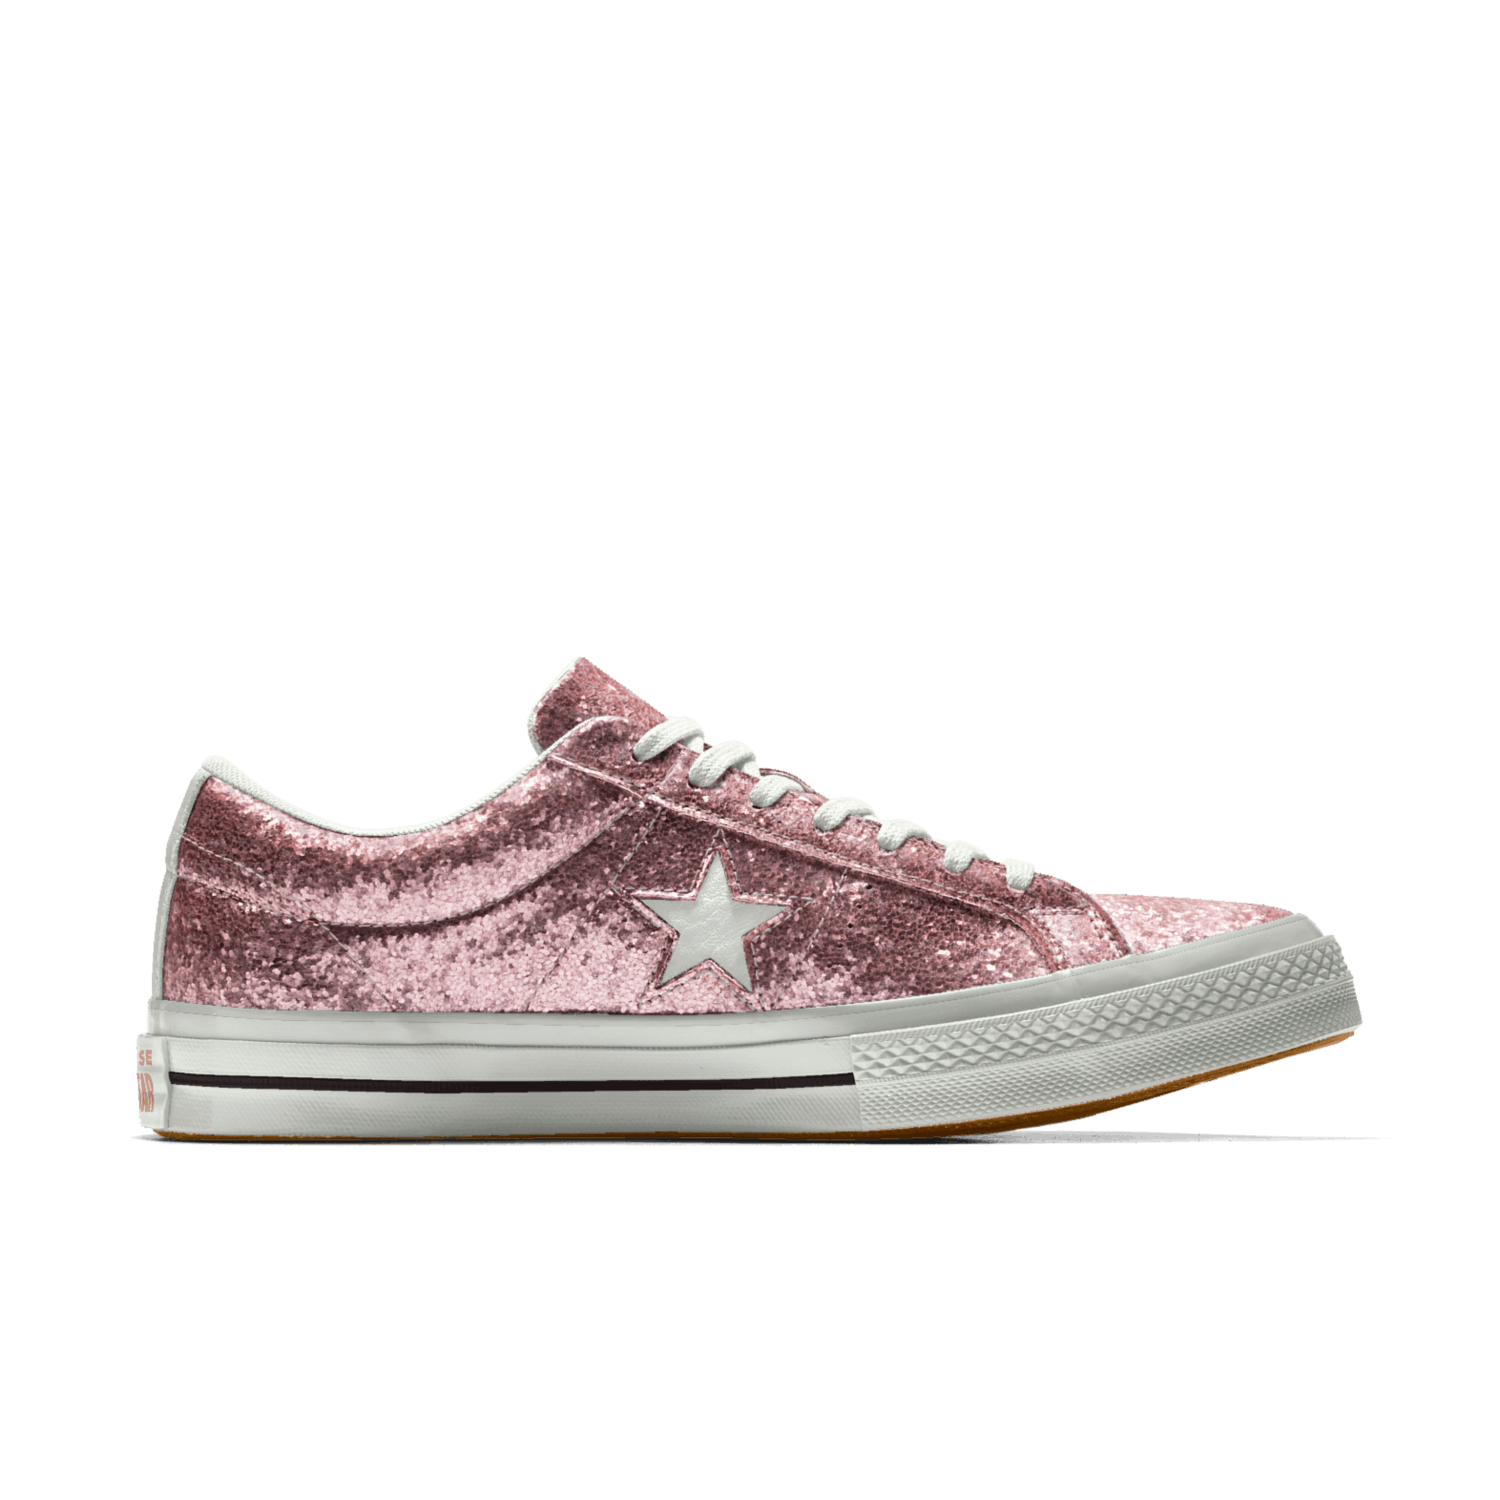 shiny converse shoes